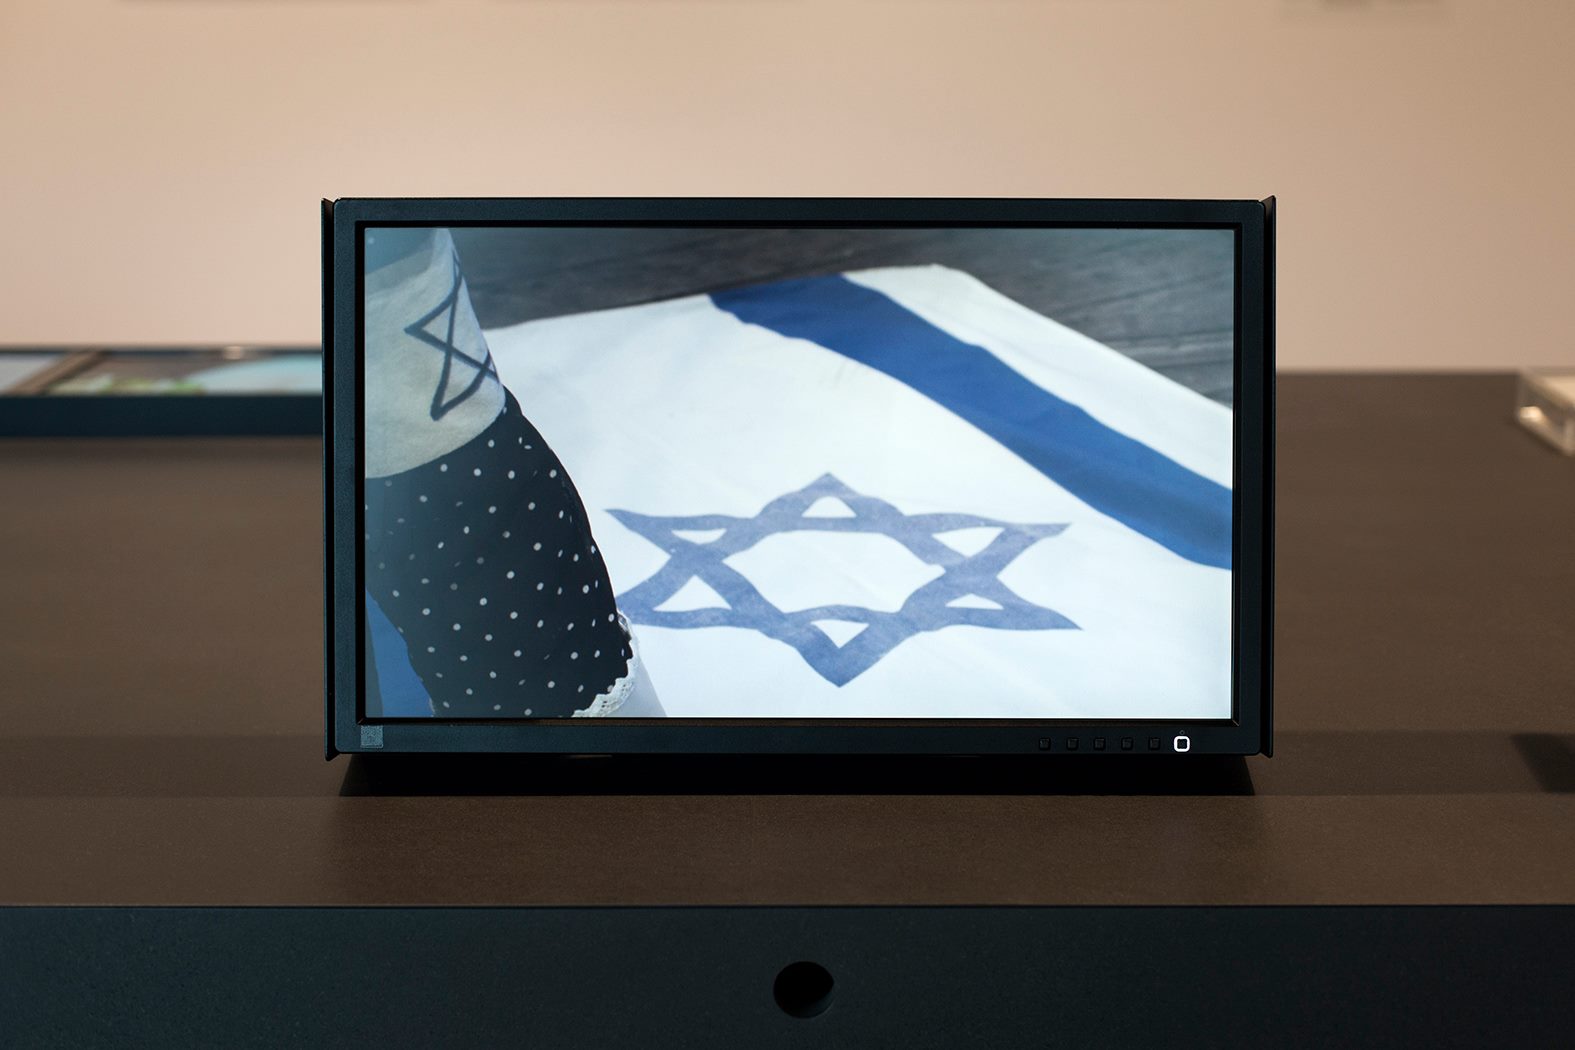 flaga izraelska na ekranie małego telewizora